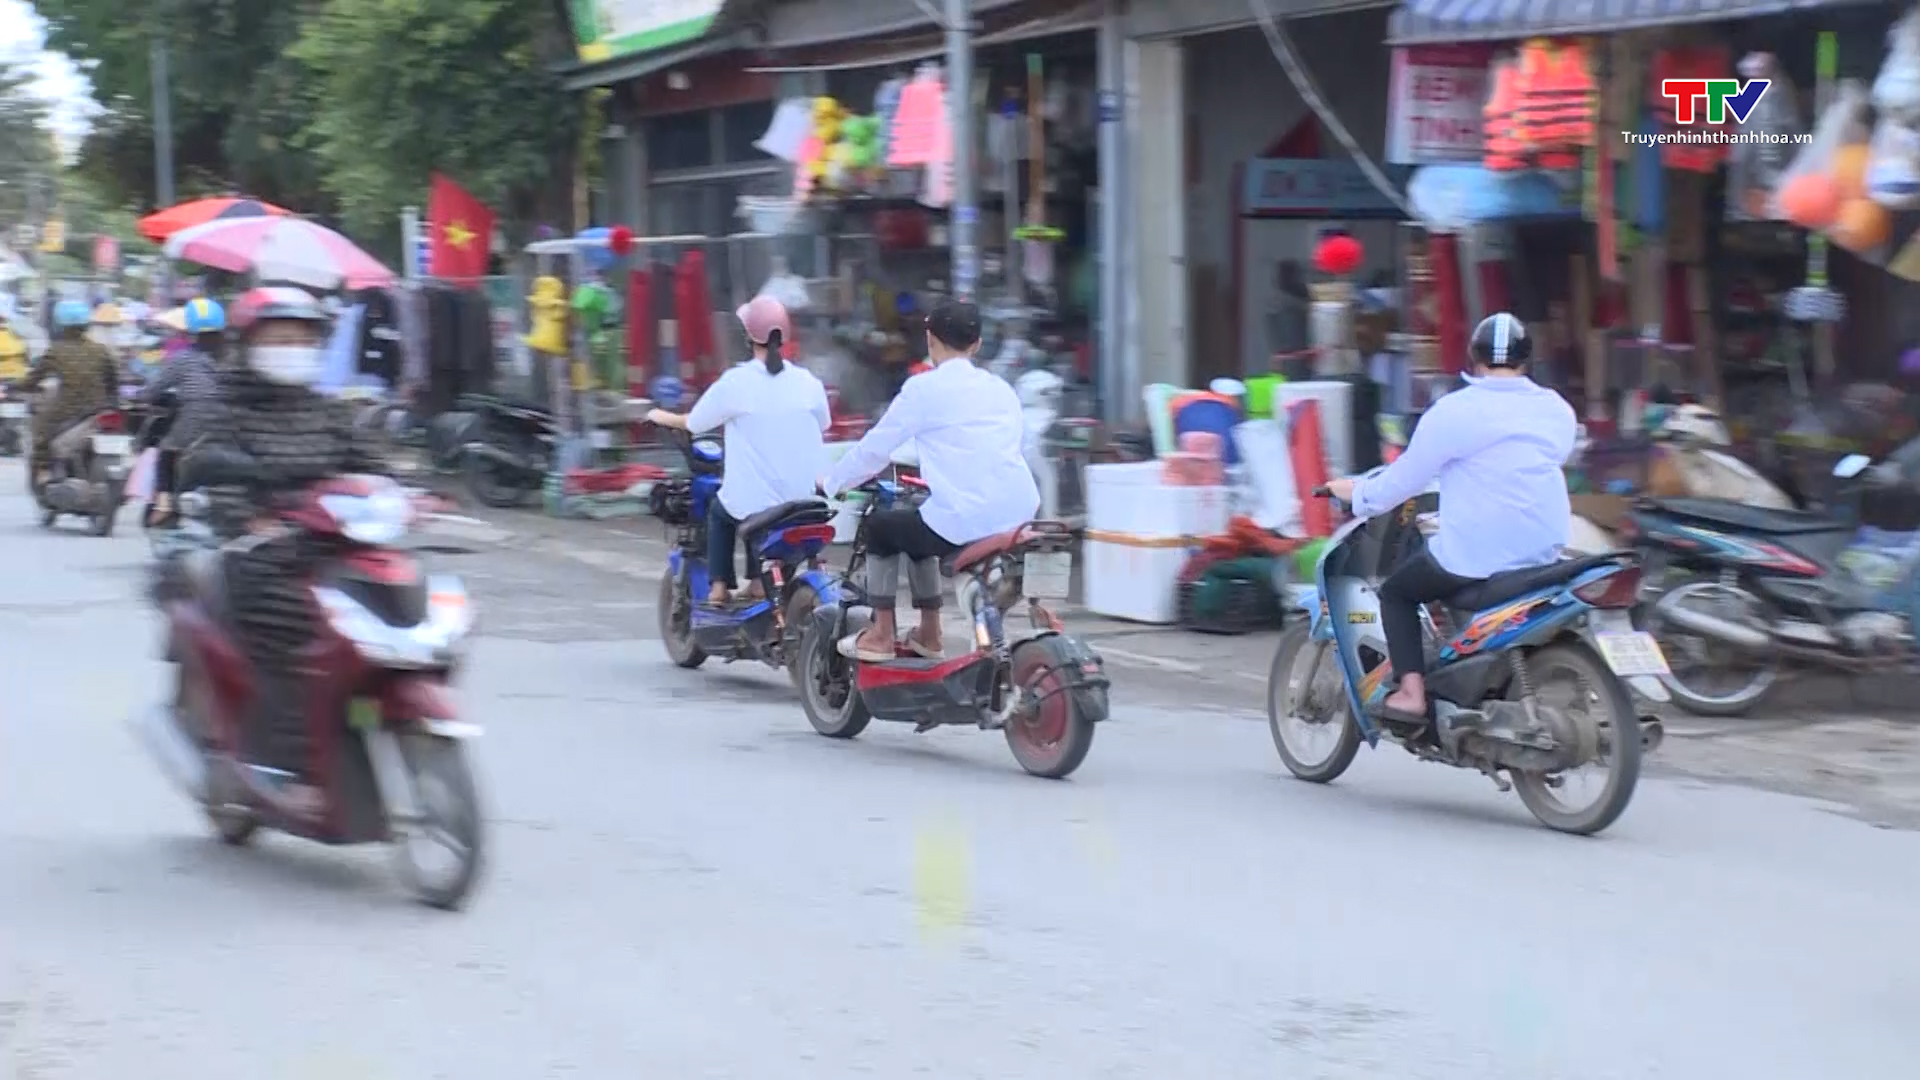 Công an huyện Triệu Sơn xử lý thanh thiếu niên, học sinh vi phạm trật tự an toàn giao thông  - Ảnh 2.